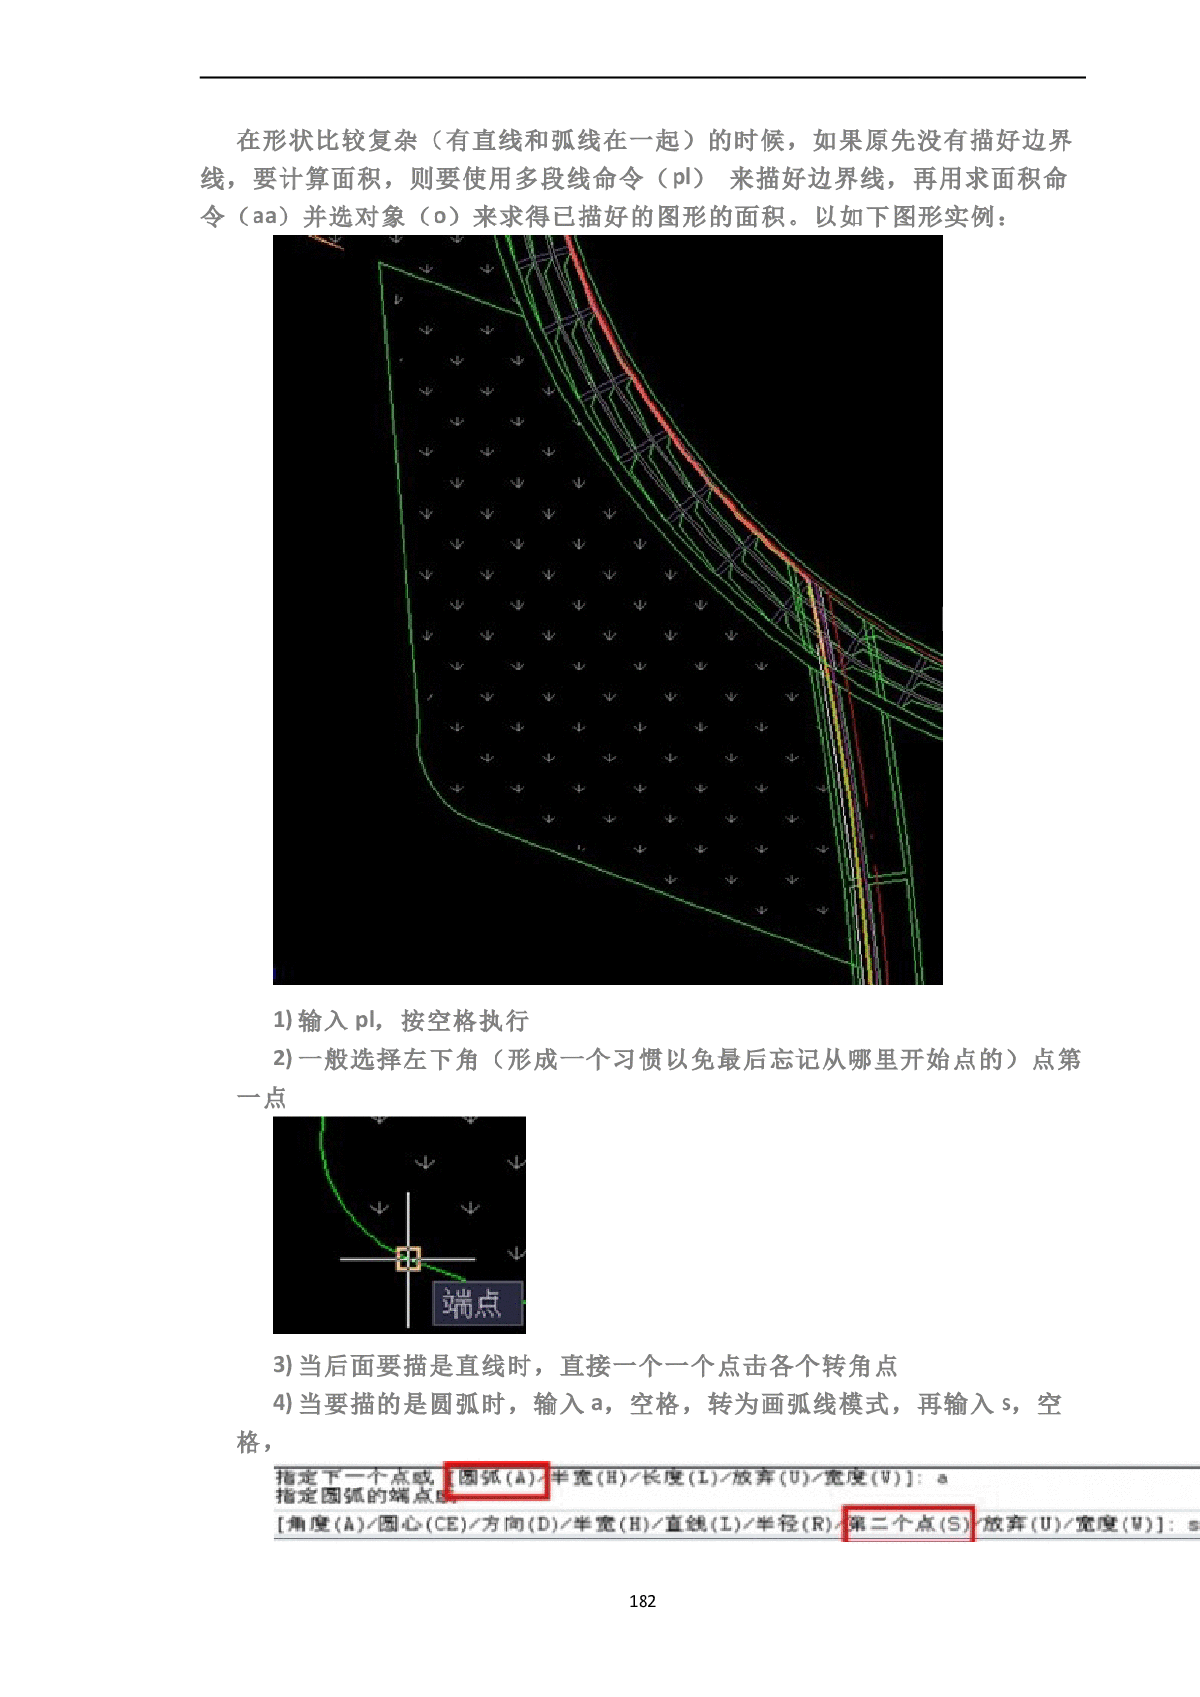 用CAD计算复杂图形面积的方法